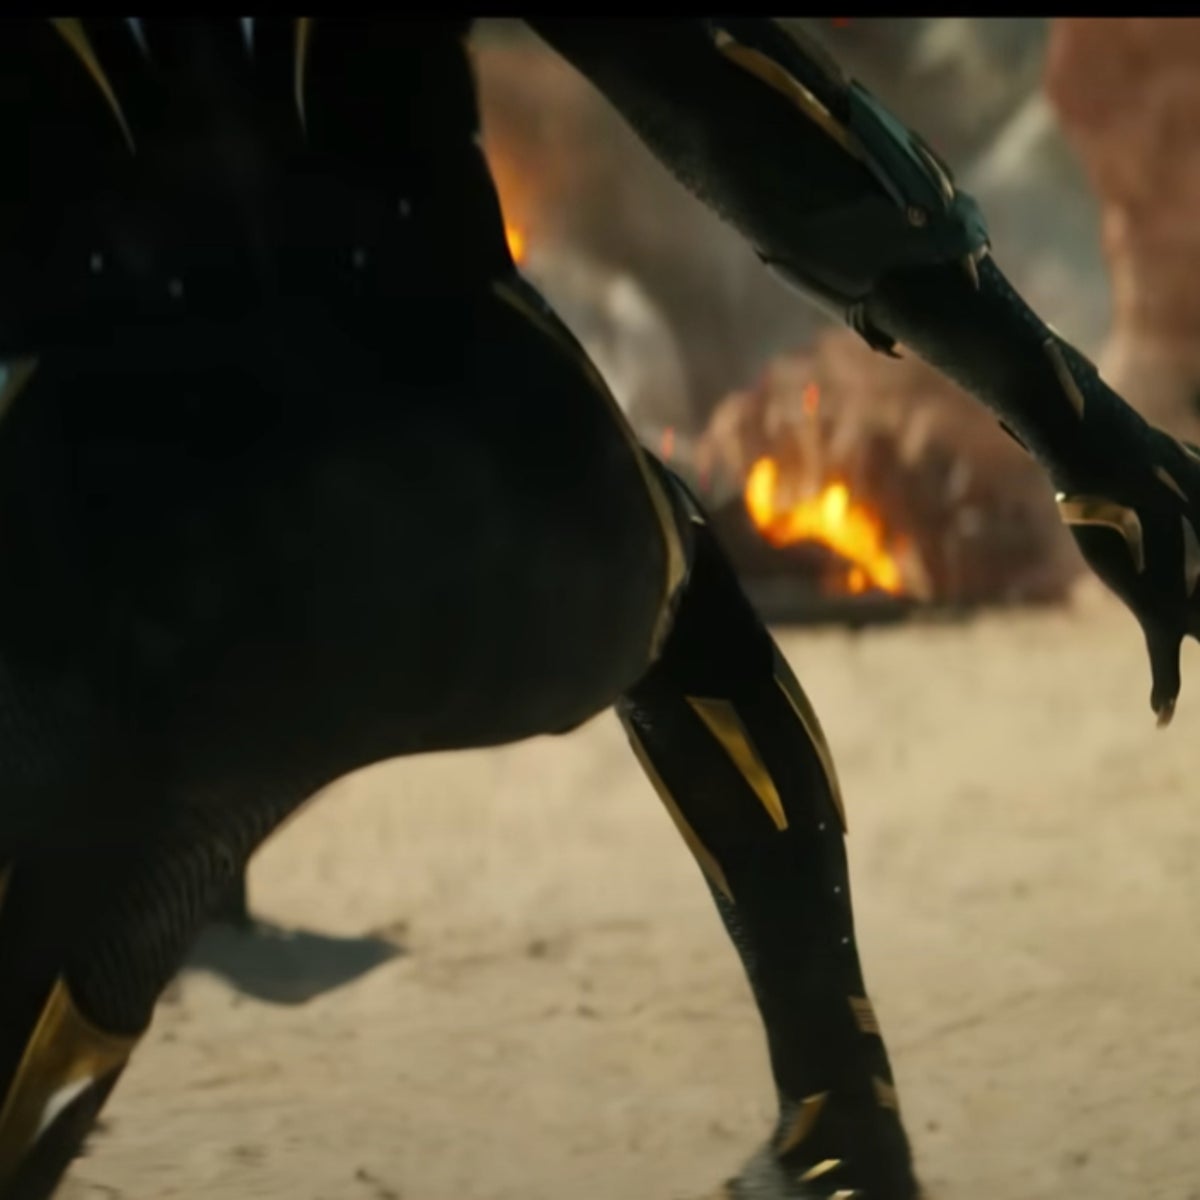 Black Panther 2: Wakanda Forever trailer hinted at Michael B Jordan return,  fans say